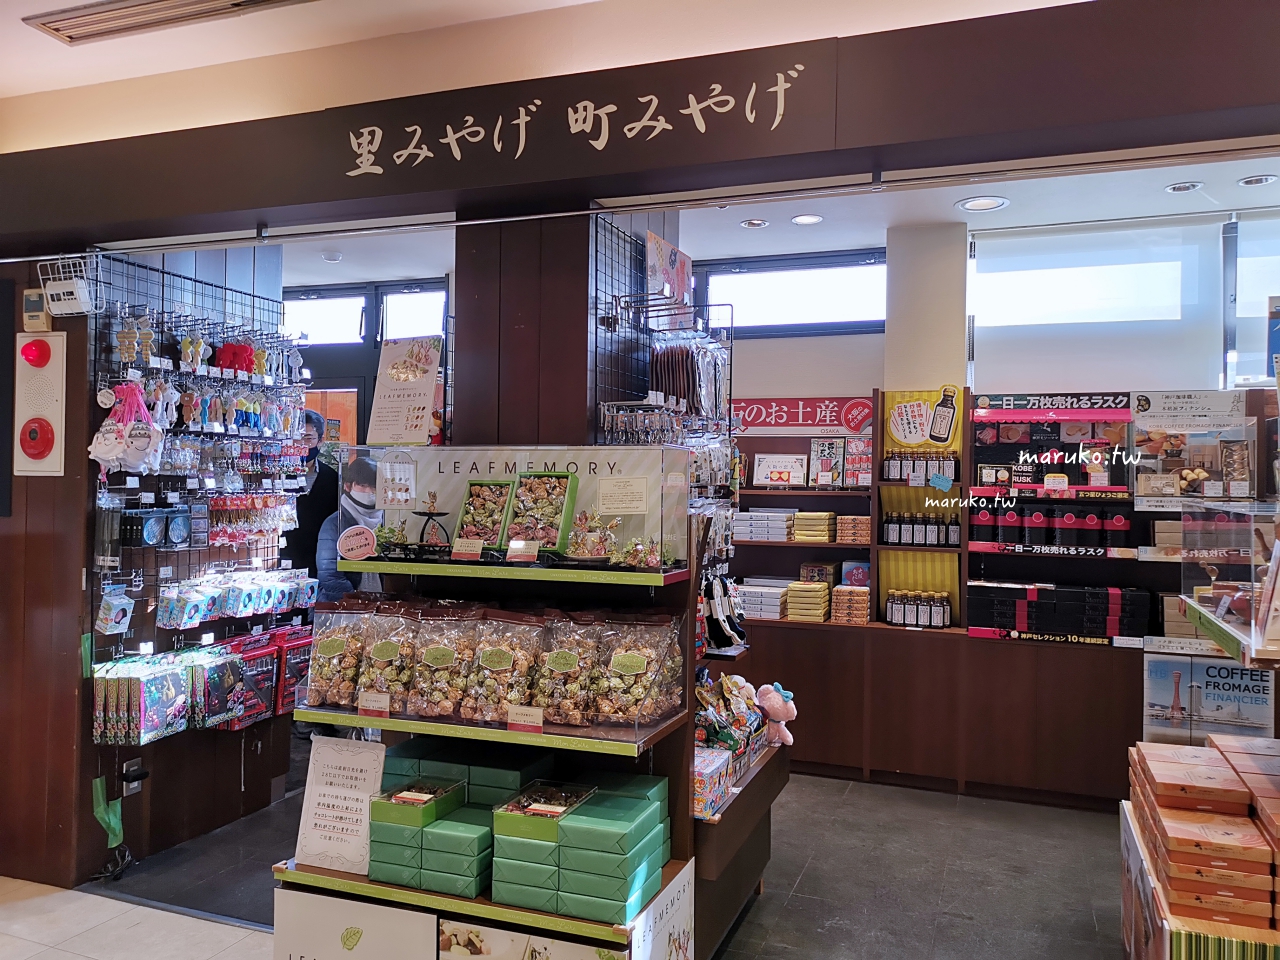 【大阪】TORAKU 神戶布丁連續10年獲得最高金賞甜點！ @Maruko與美食有個約會